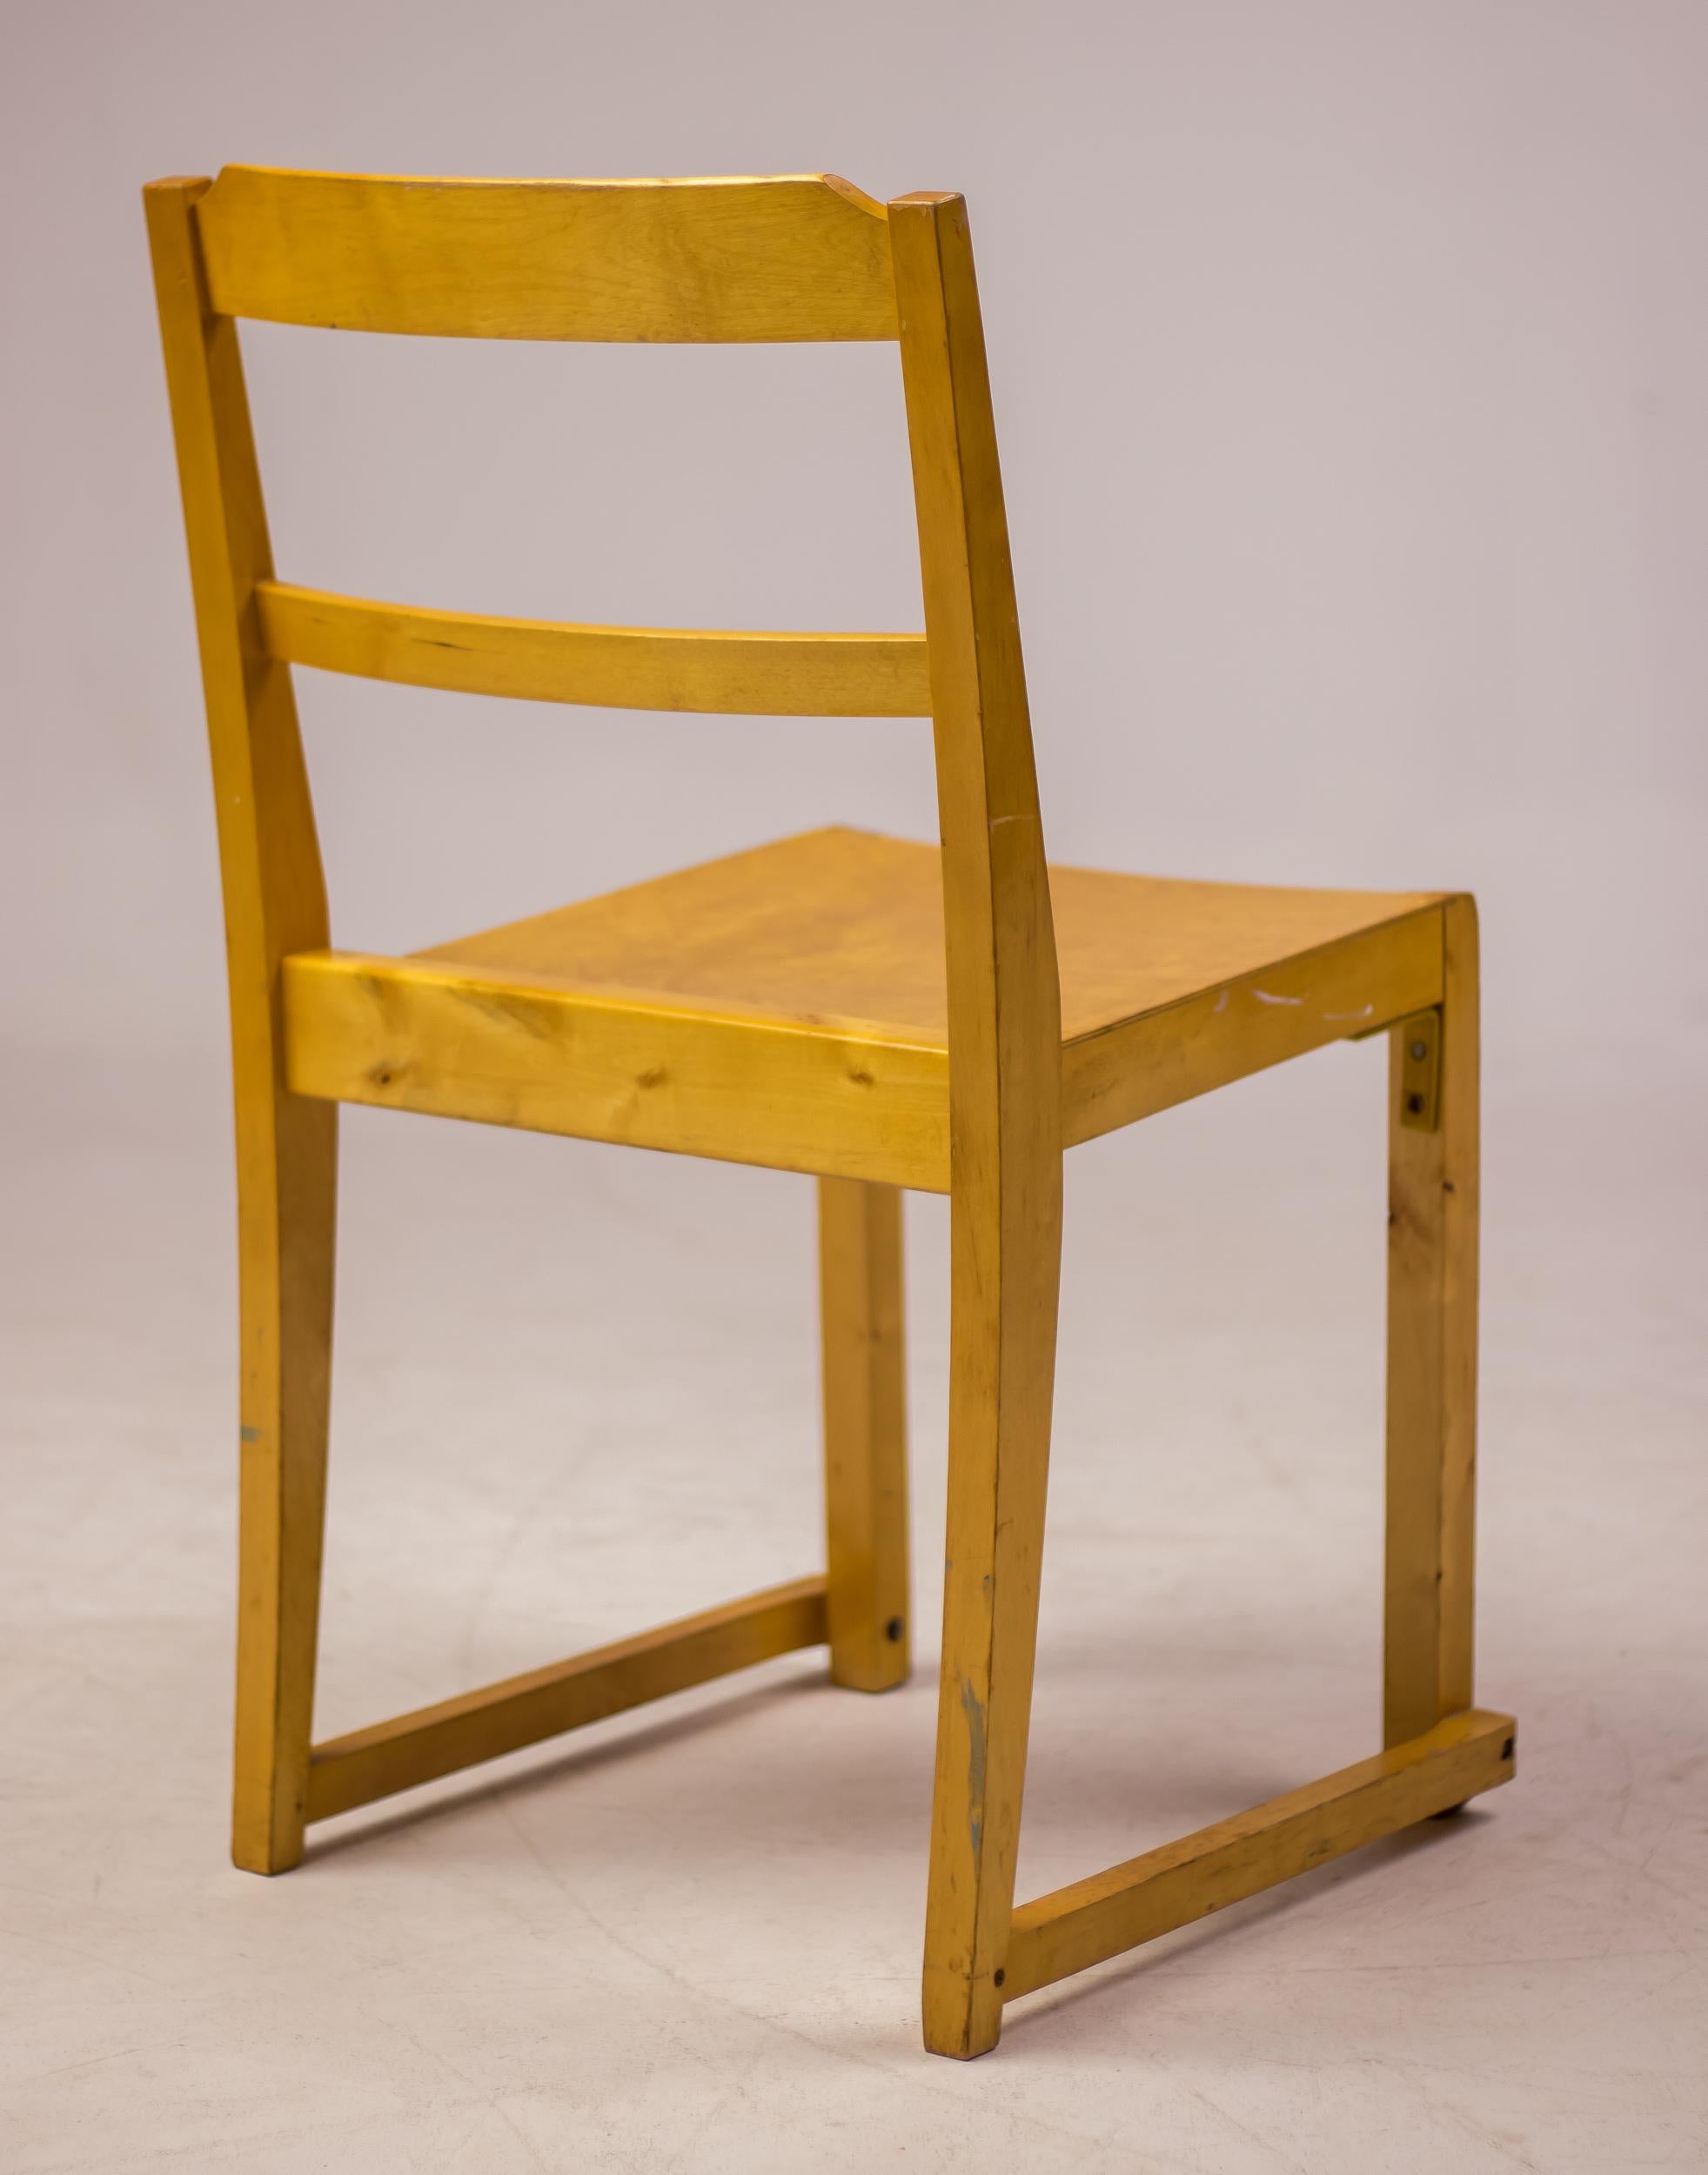 Ensemble de six chaises empilables en bouleau conçu par l'architecte suédois Sven Markelius.
Fabriqué par Bodafors pour la salle de concert de Helsingborg en 1932.
Un point de repère de l'architecture suédoise par Sven Markelius.
Chaises rares et